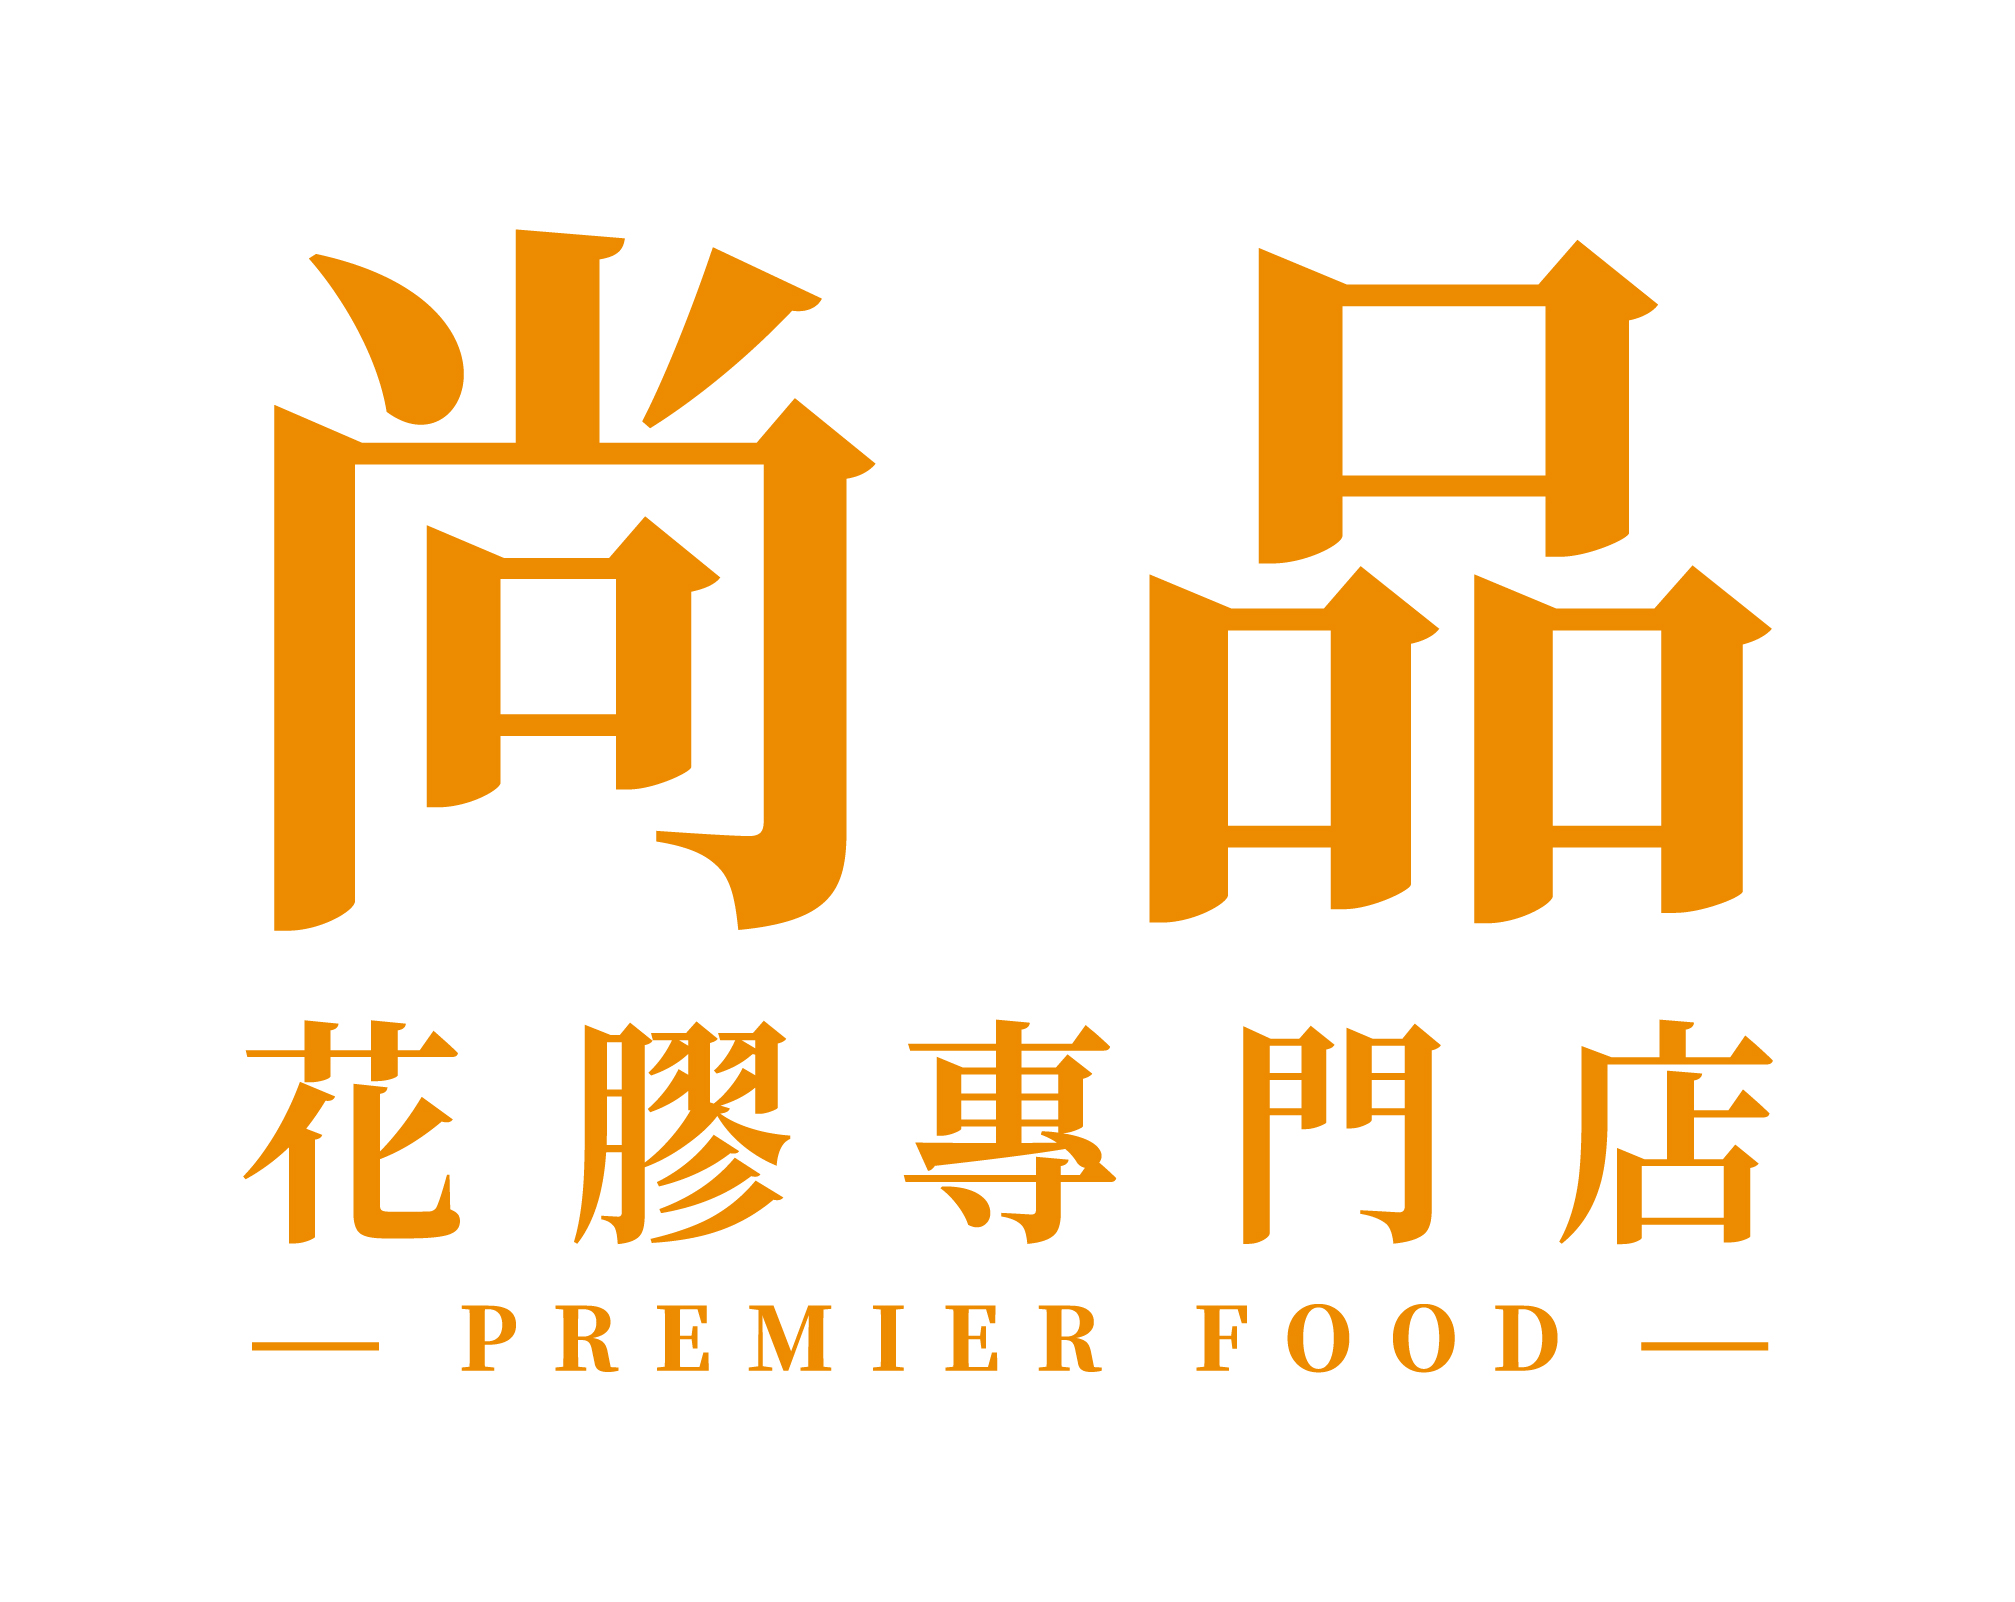 Premier Food 尚品